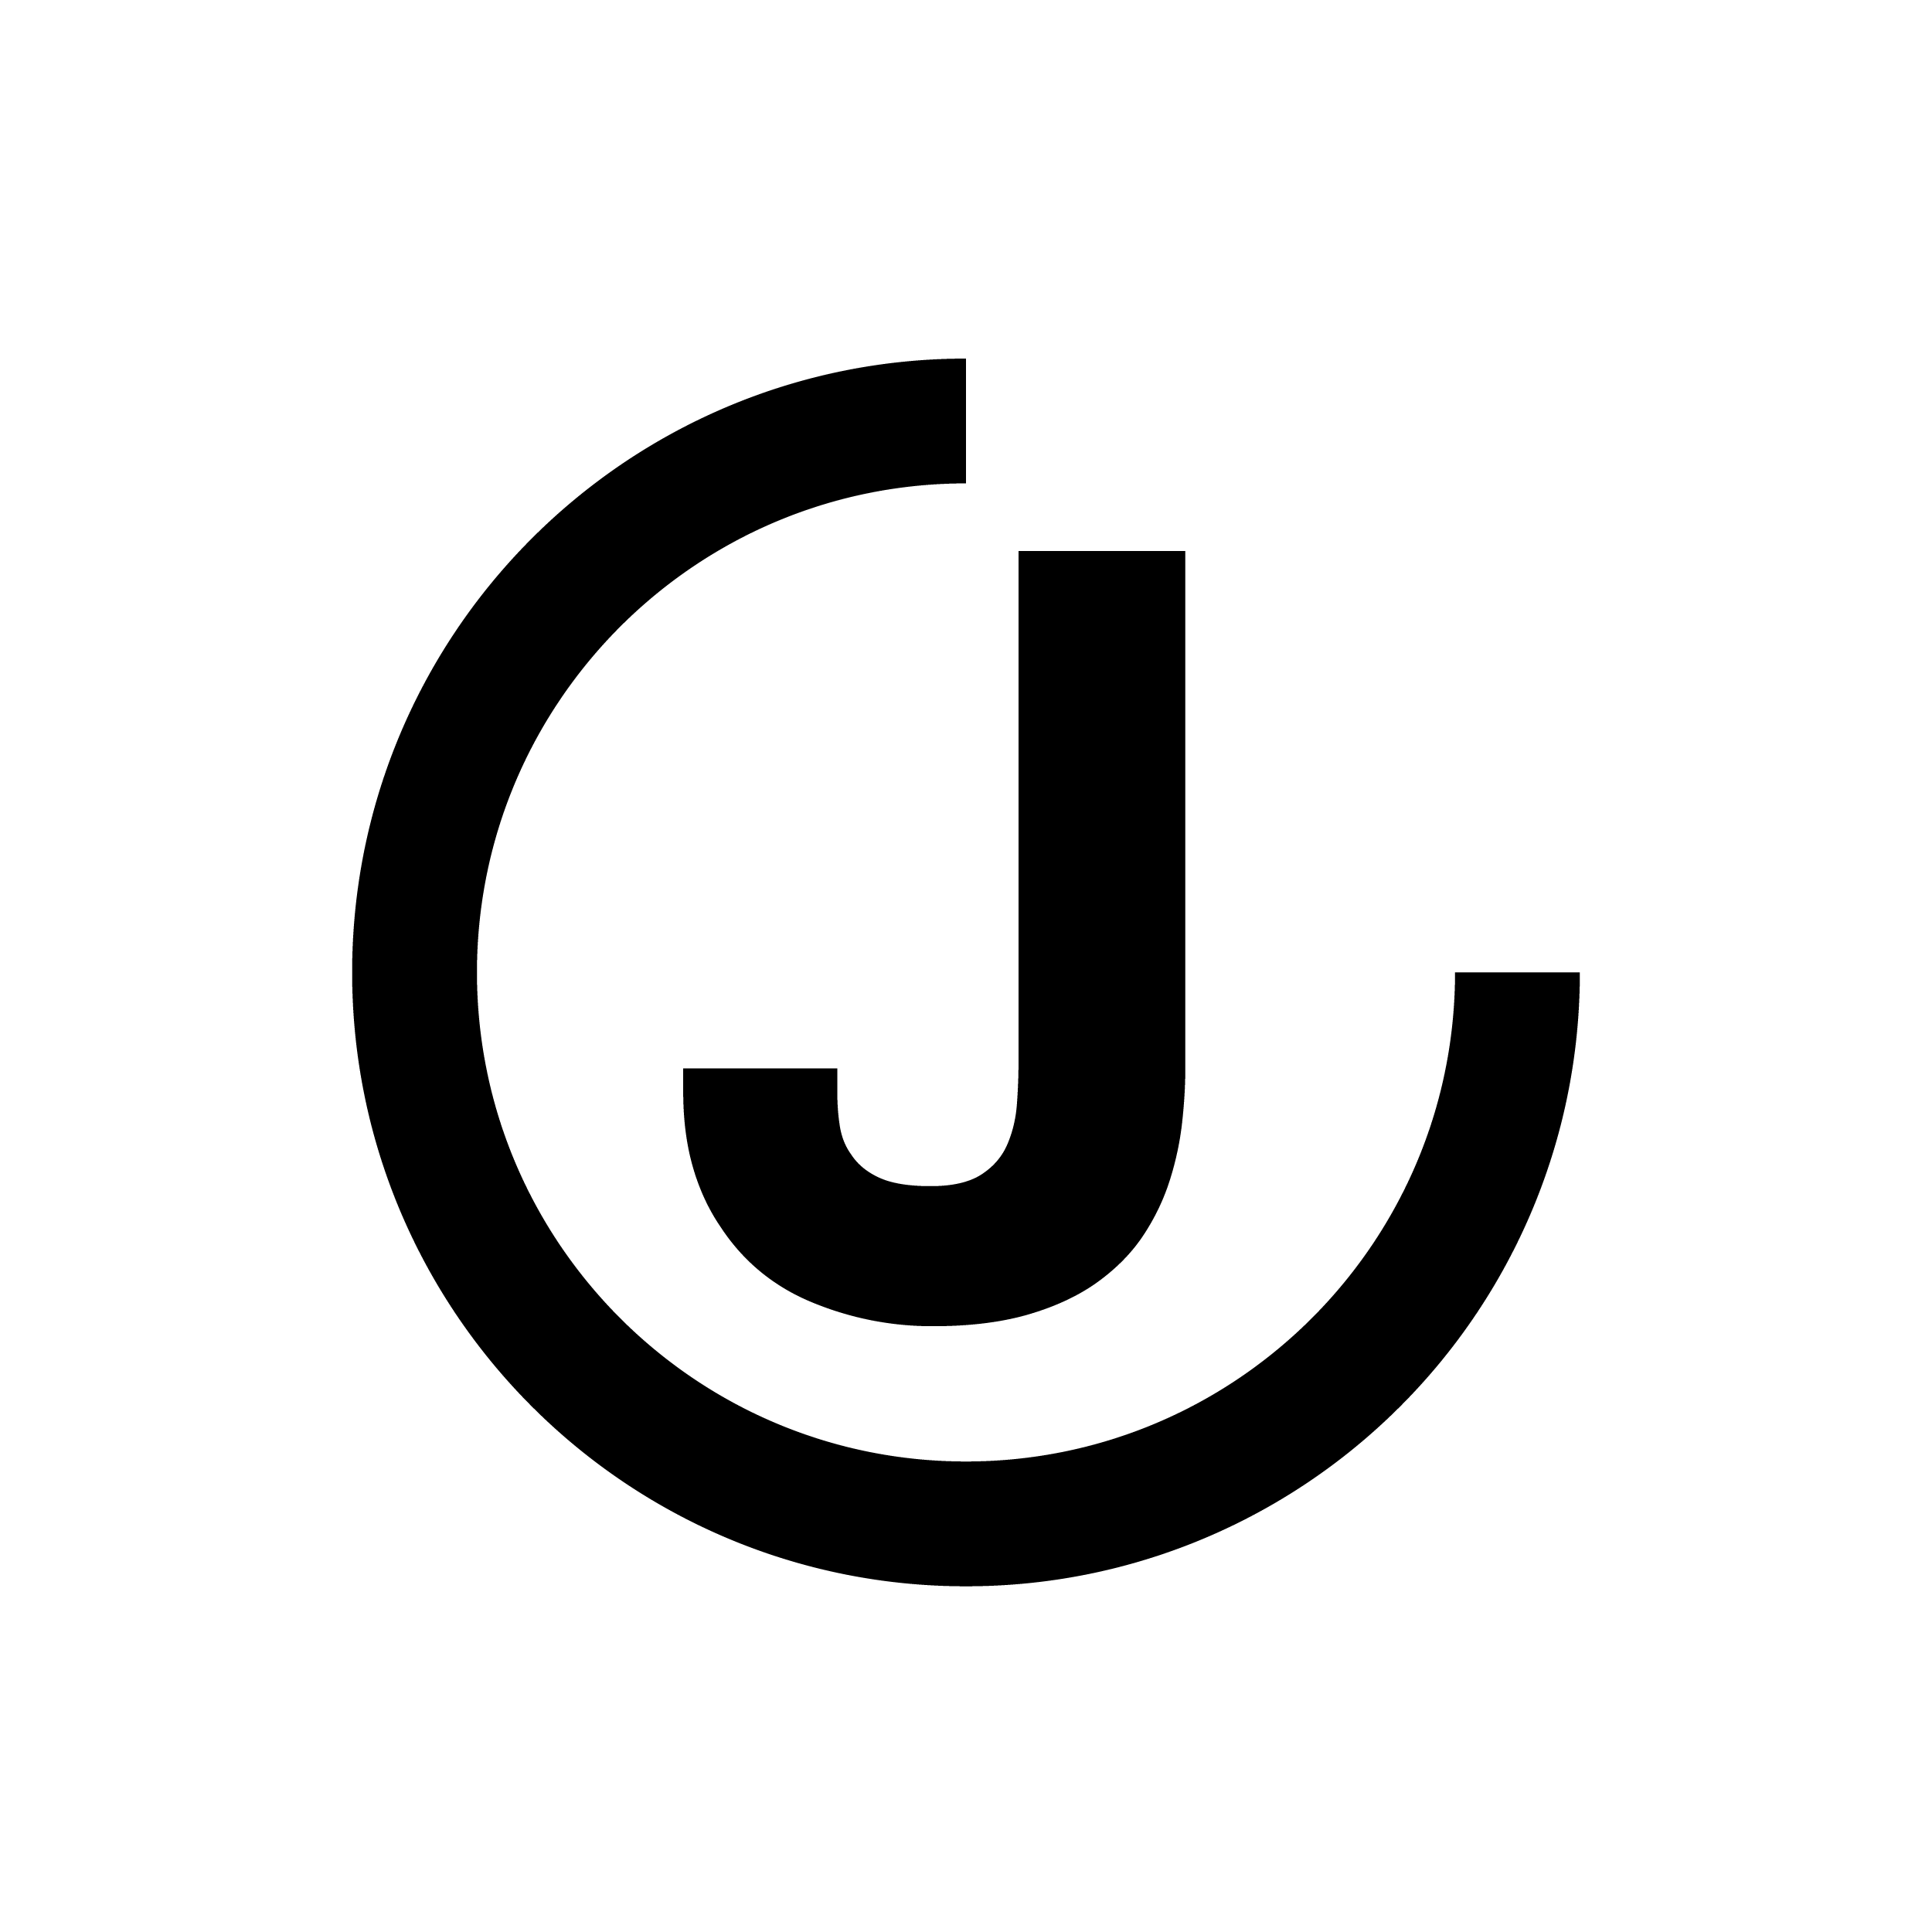 JC Logo - Logo jc png 4 » PNG Image